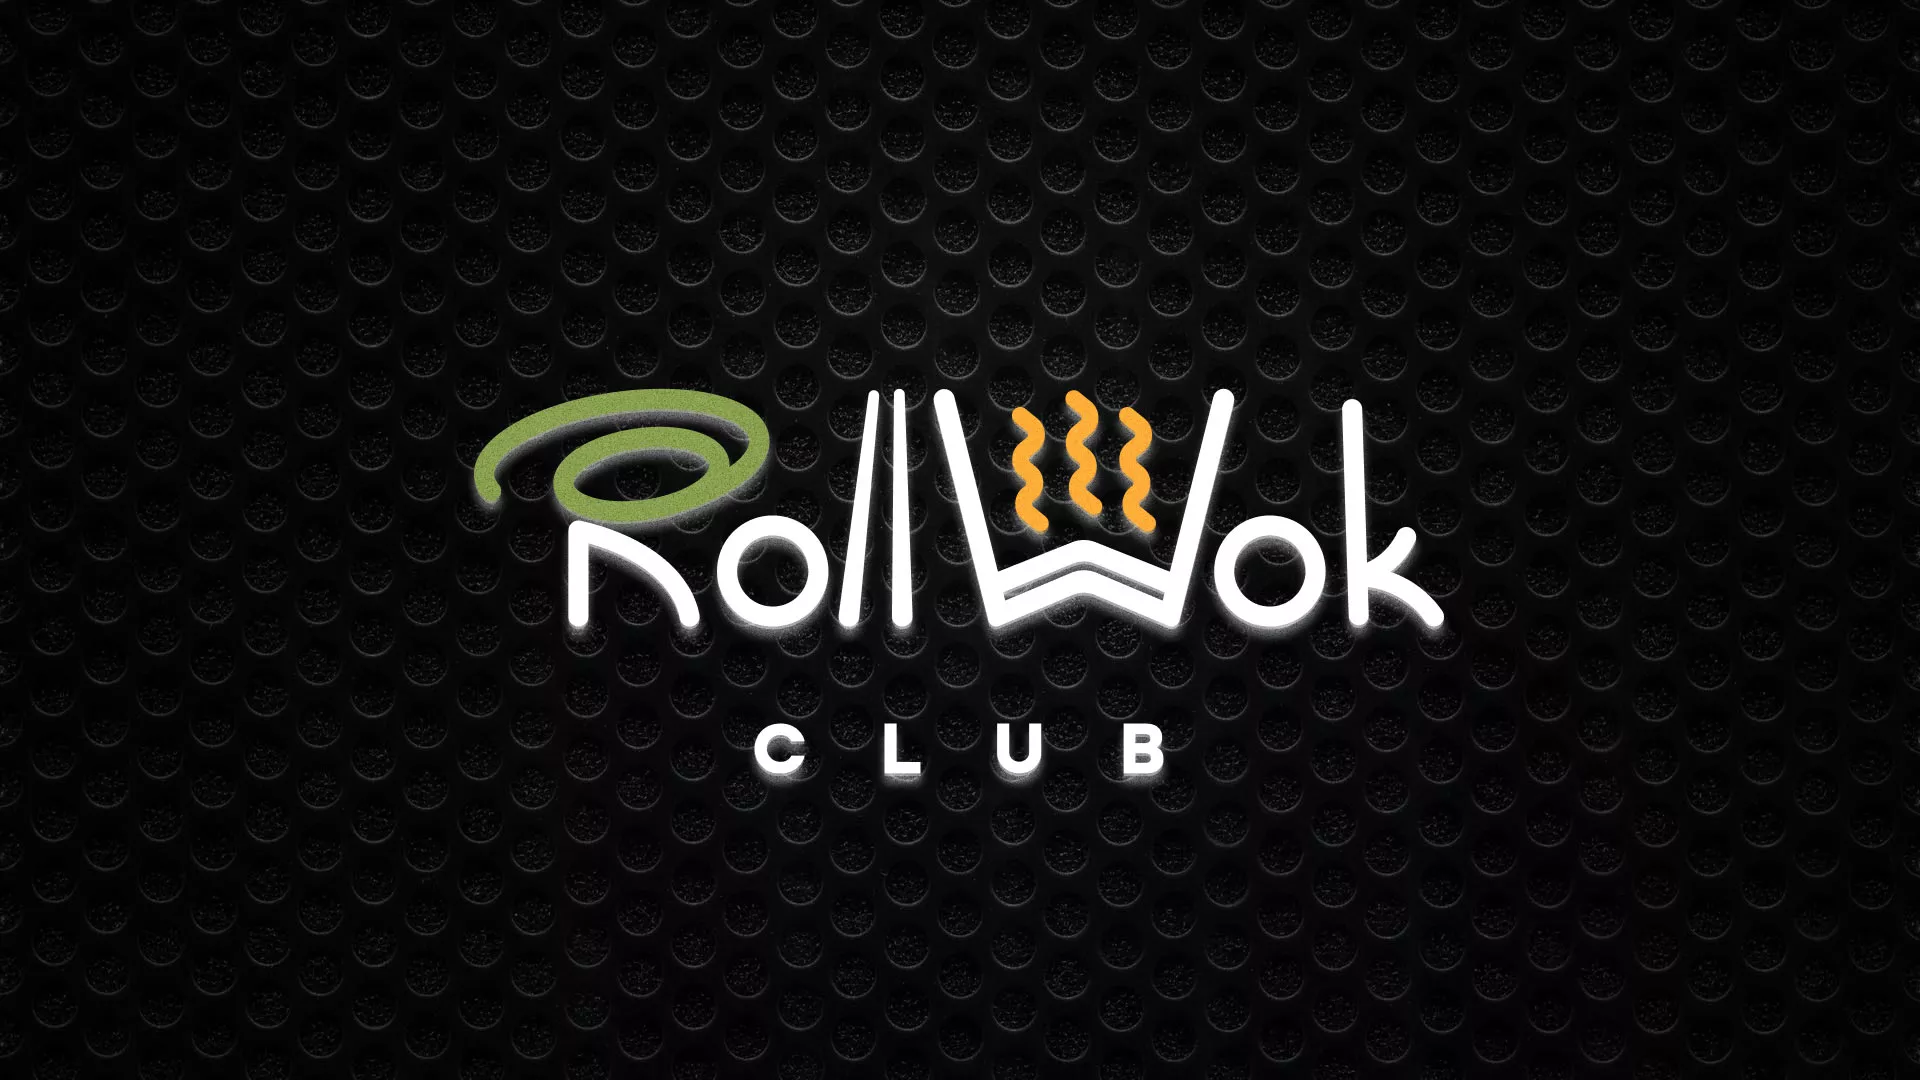 Брендирование торговых точек суши-бара «Roll Wok Club» в Химках